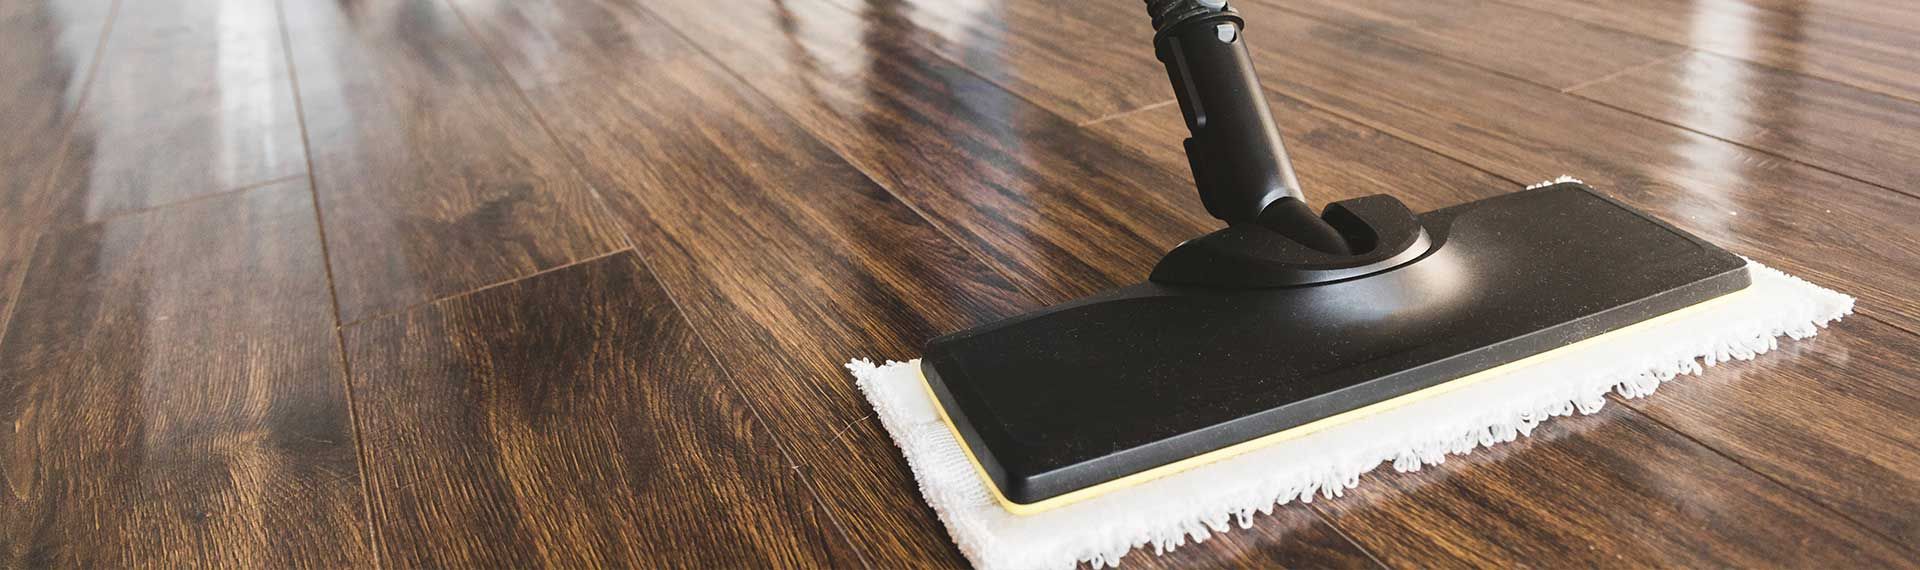 El piso SPC de Lalur es fácil de limpiar y no necesita mantenimiento